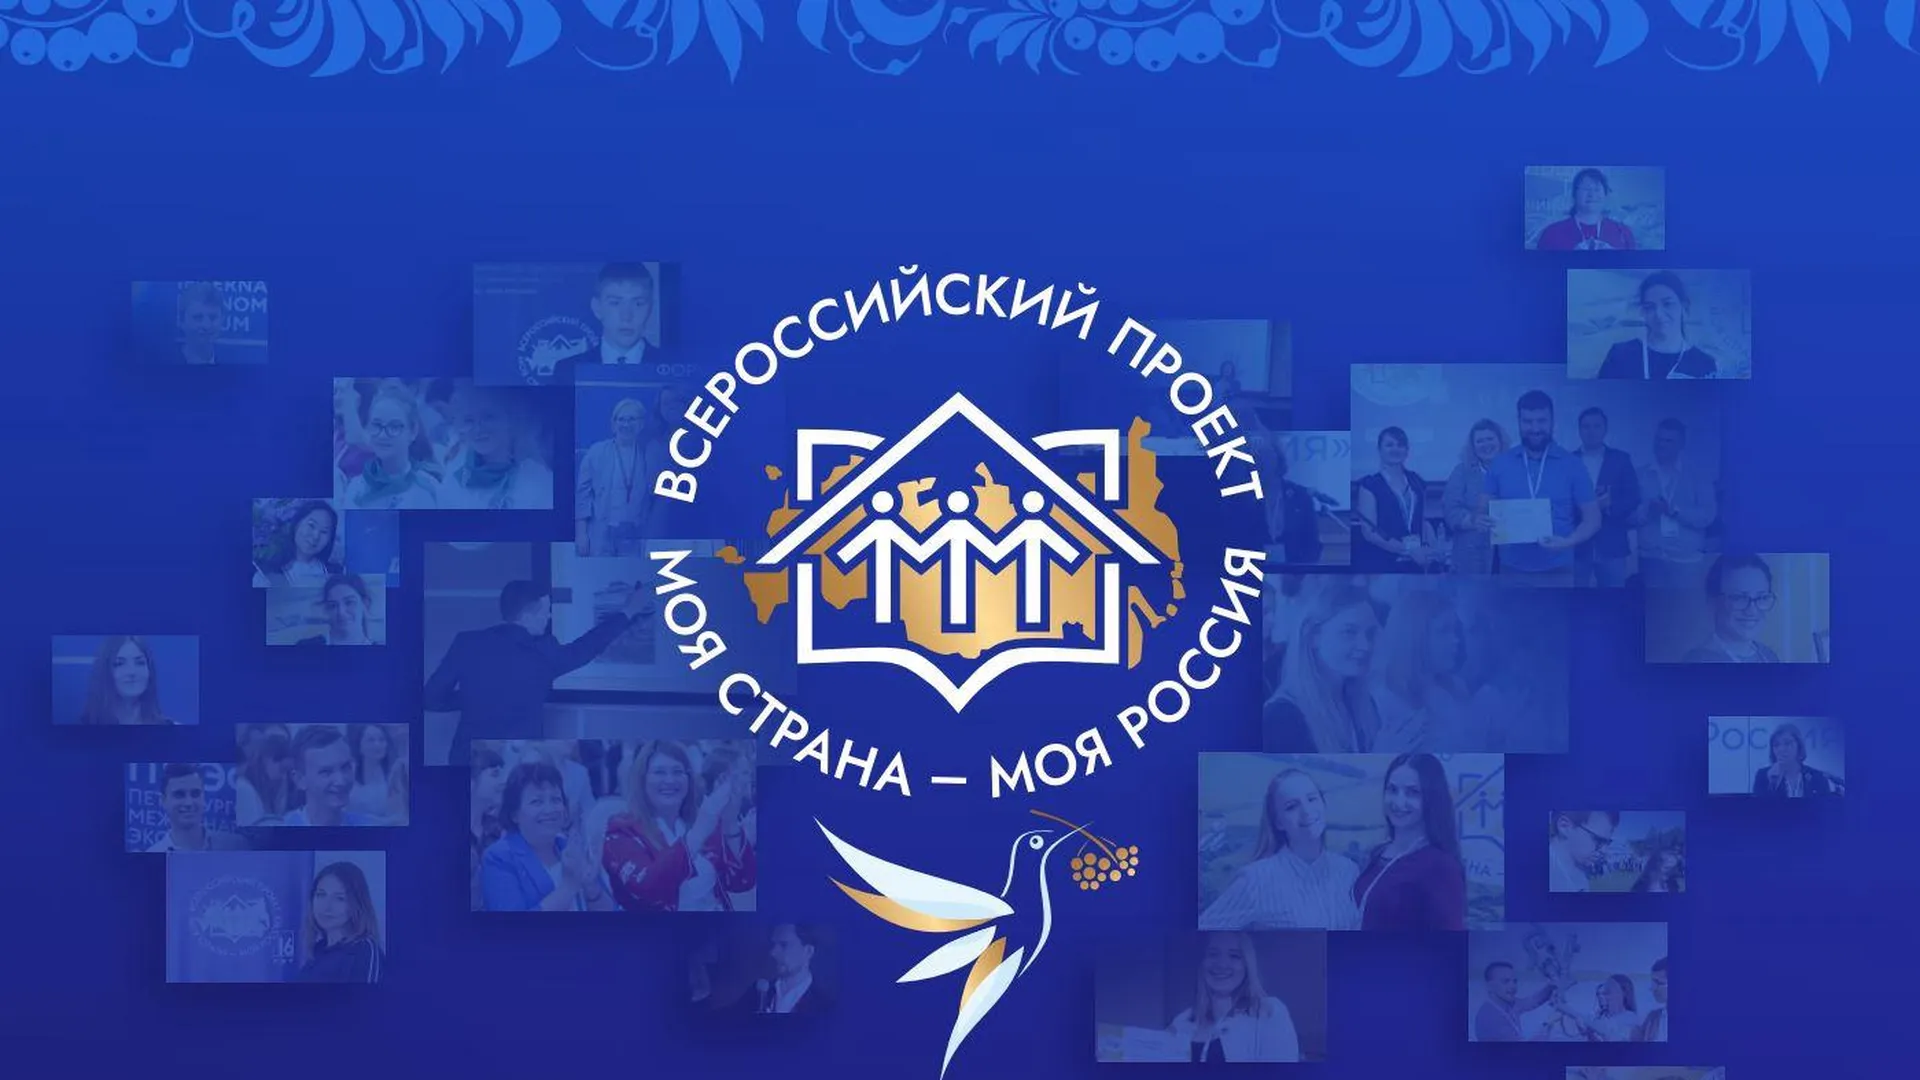 страница конкурса "Моя страна - моя Россия" в соцсети "Вконтакте"